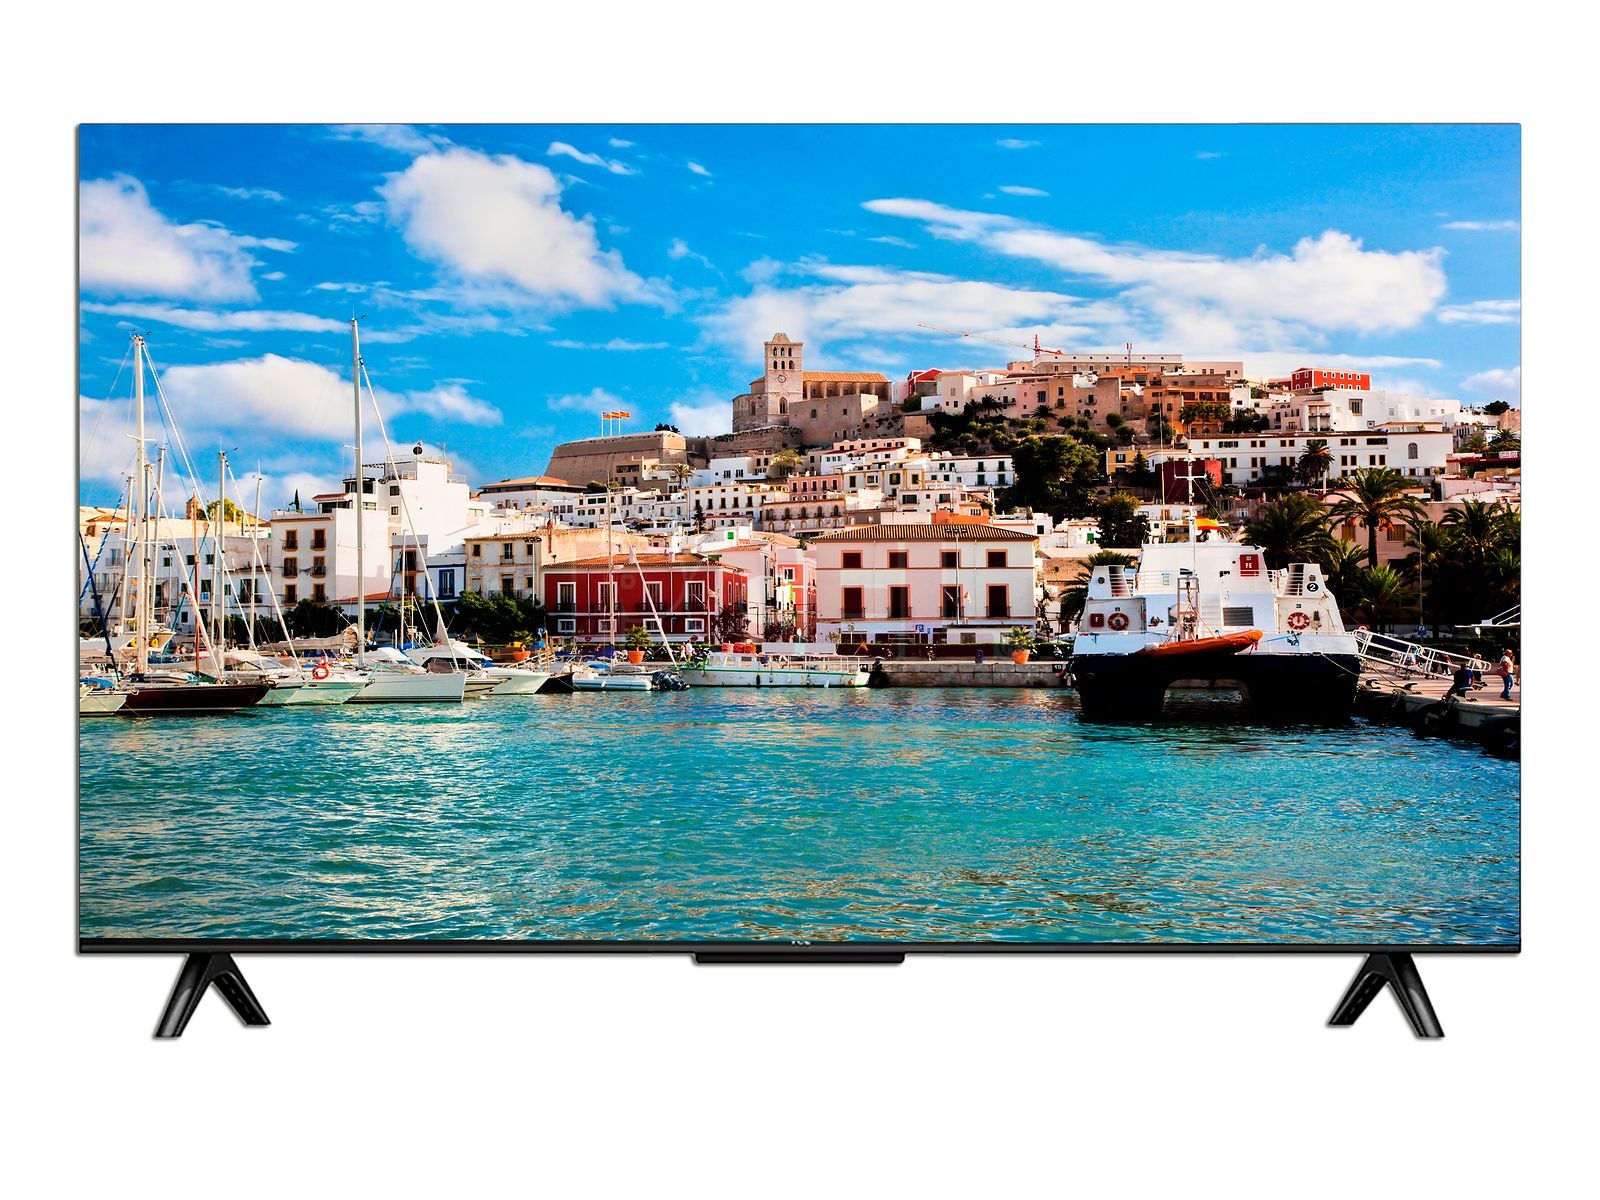 Televisión TCL LED Smart TV de 55, Resolución 3840 x 2160 (Ultra